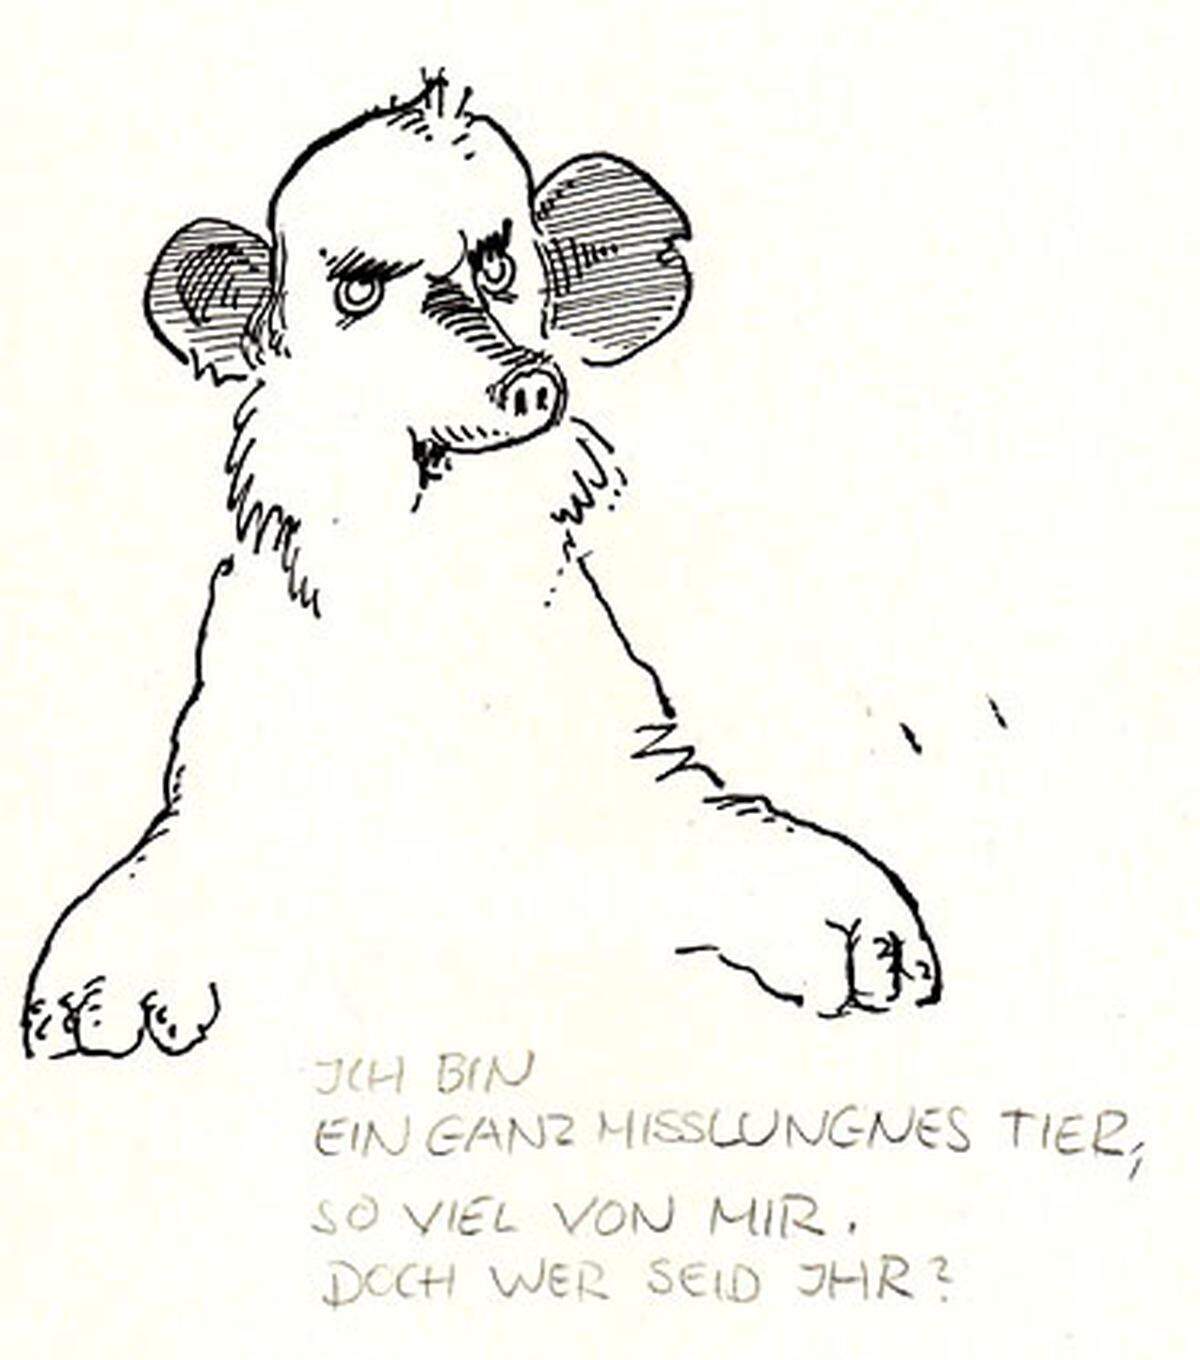 Das Karikaturmuseum nimmt bei der Ausstellung besondere Rücksicht auf Kinder und hängt die Bilder niedriger auf als sonst.  Im Bild: F. W. Bernstein, Das misslungene Tier, 1975 (c) F. W. Bernstein, 2009